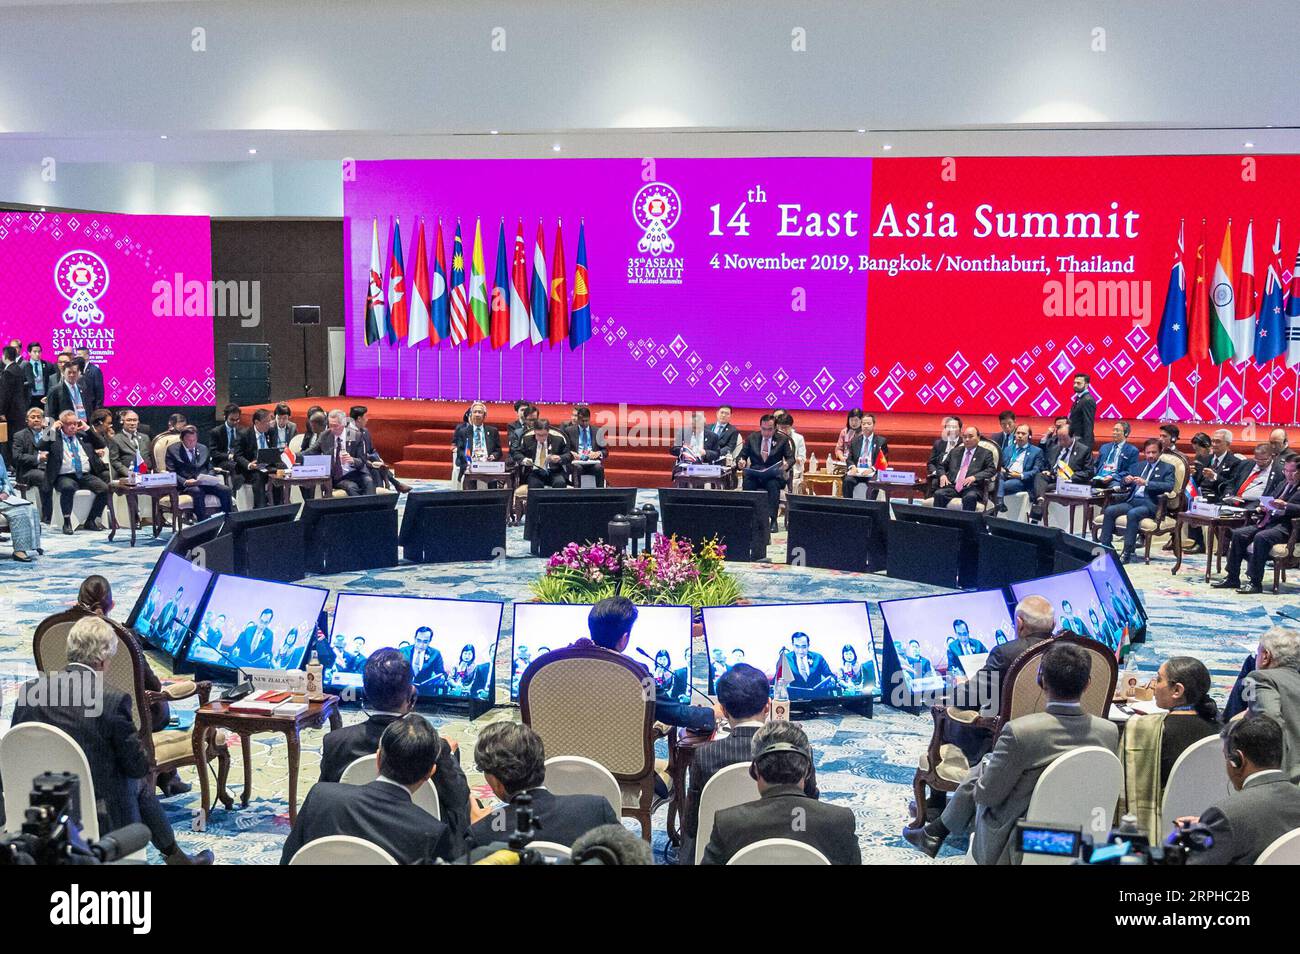 191104 -- BANGKOK, le 4 novembre 2019 -- les participants assistent au 14e Sommet de l'Asie de l'est à Bangkok, Thaïlande, le 4 novembre 2019. Le sommet est un événement régional annuel réunissant 10 membres de l'Association des nations de l'Asie du Sud-est ASEAN, ainsi que la Chine, le Japon, la Corée du Sud, l'Inde, l'Australie, nouvelle-Zélande, Russie et États-Unis. SOMMET THAÏLANDE-BANGKOK-ASIE DE L'EST ZhuxWei PUBLICATIONxNOTxINxCHN Banque D'Images